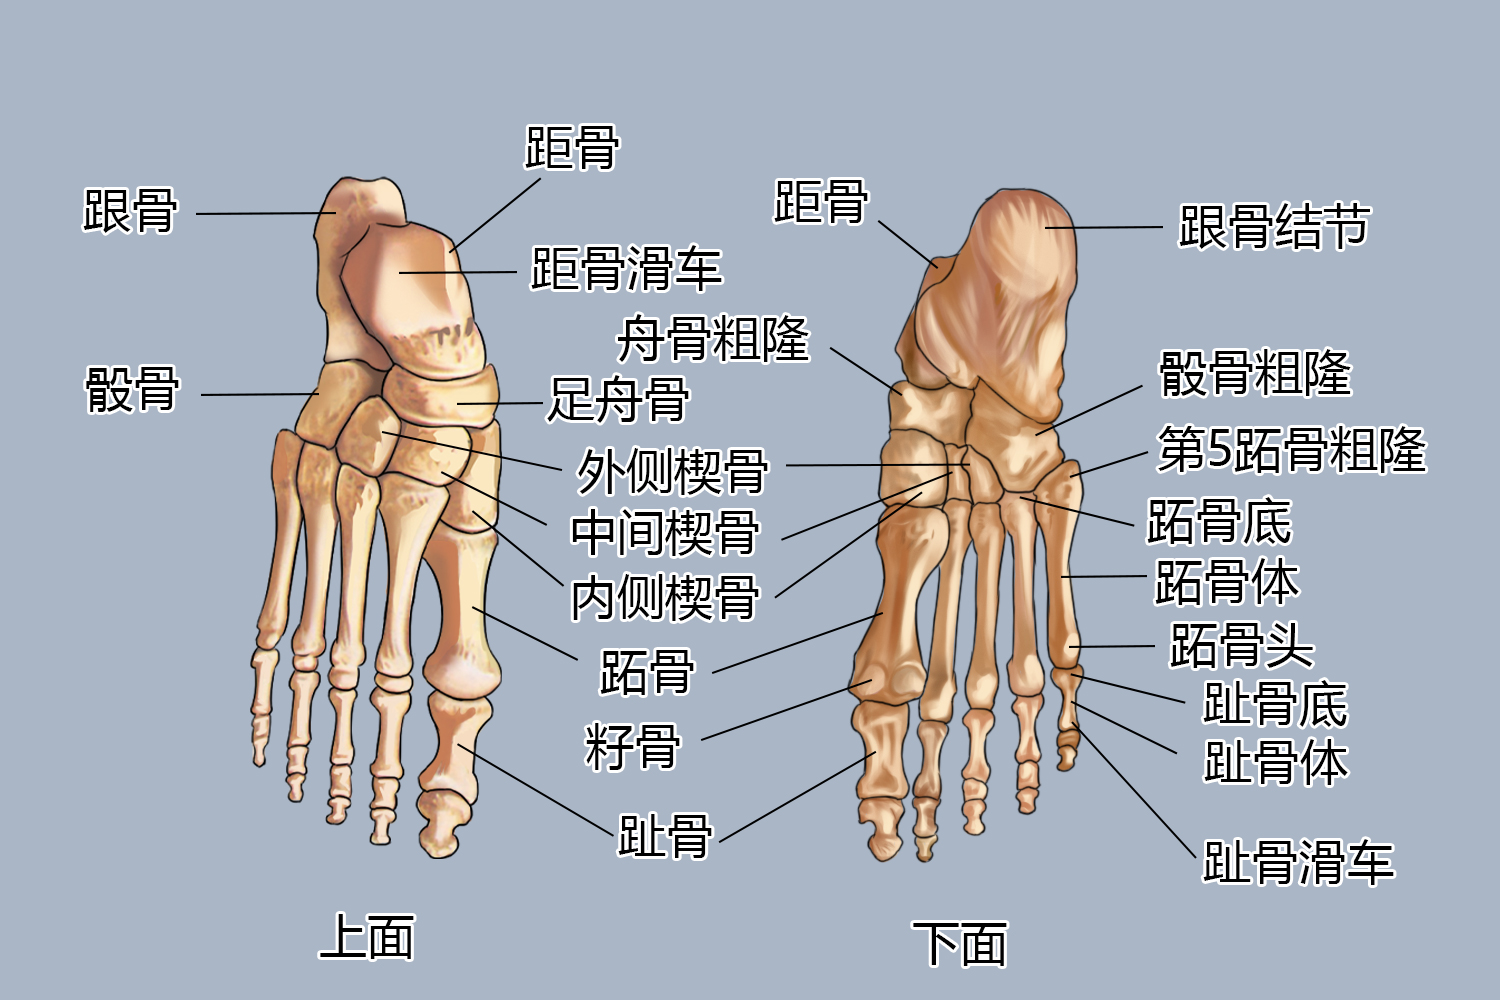 前脚掌骨骼部位图常见问题前脚掌作为人体的主要支撑点,能够支撑人体